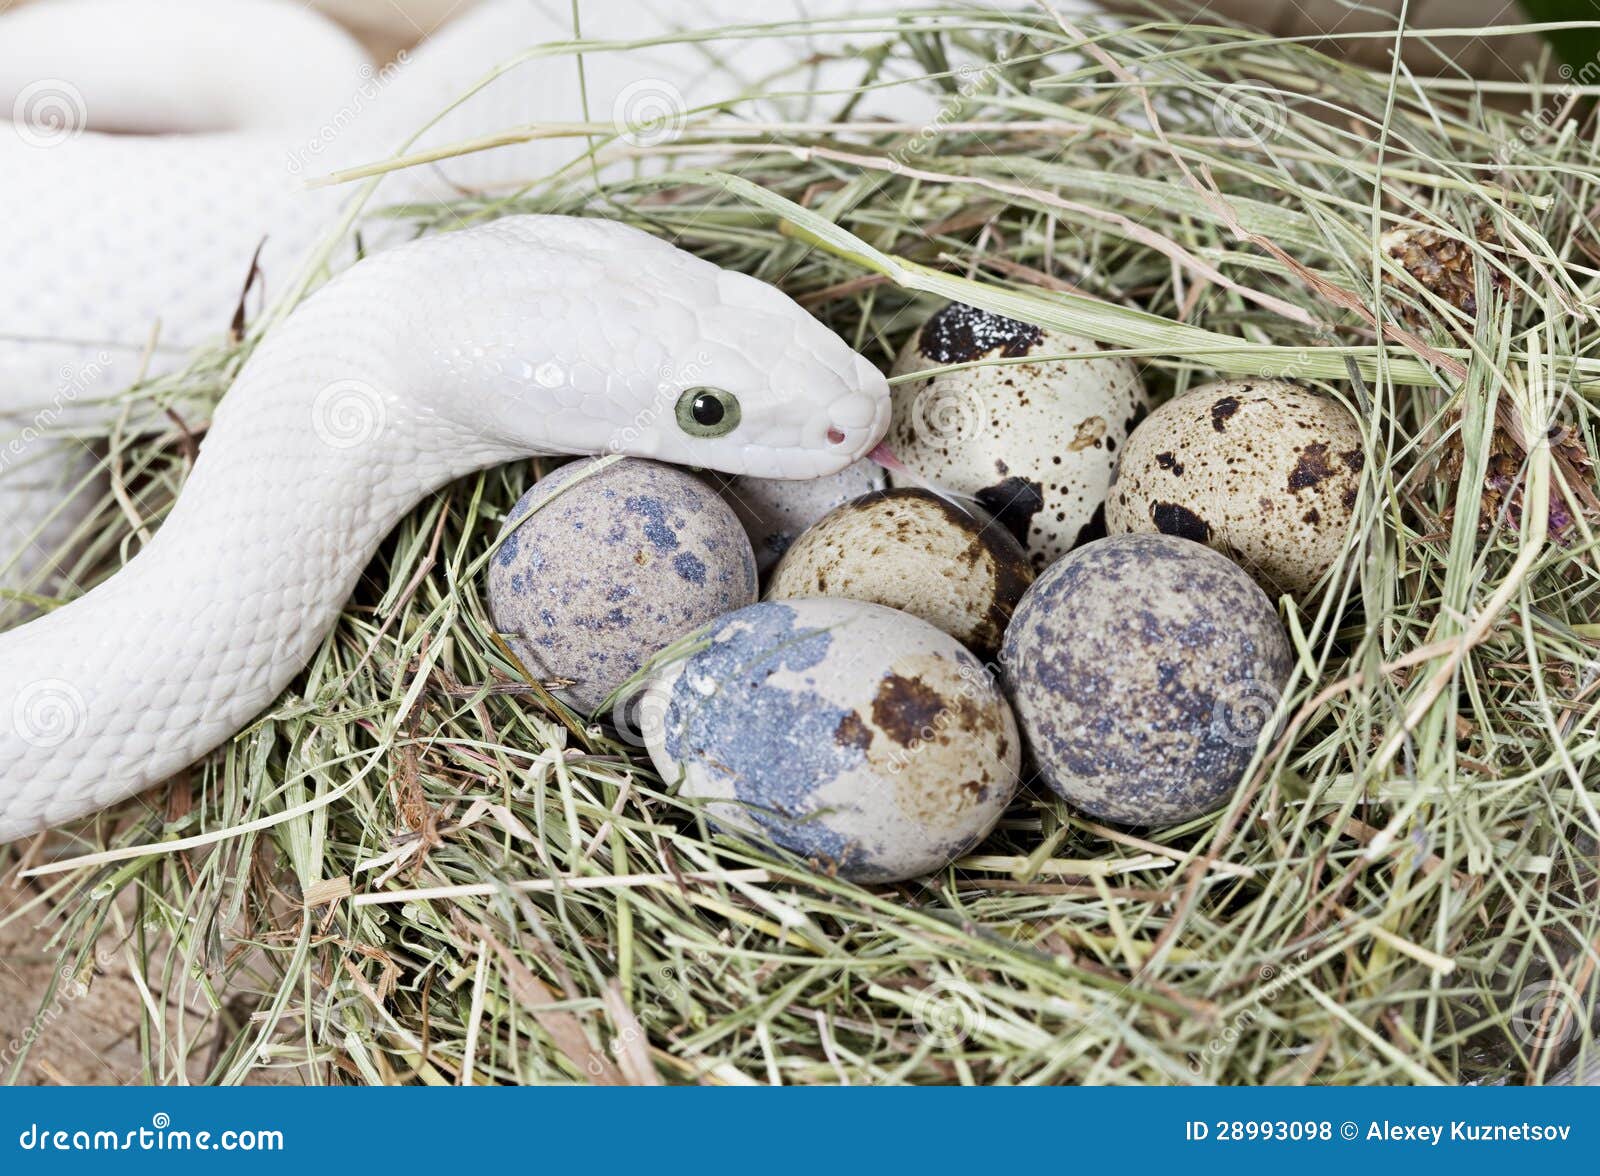 Rat snake eggs